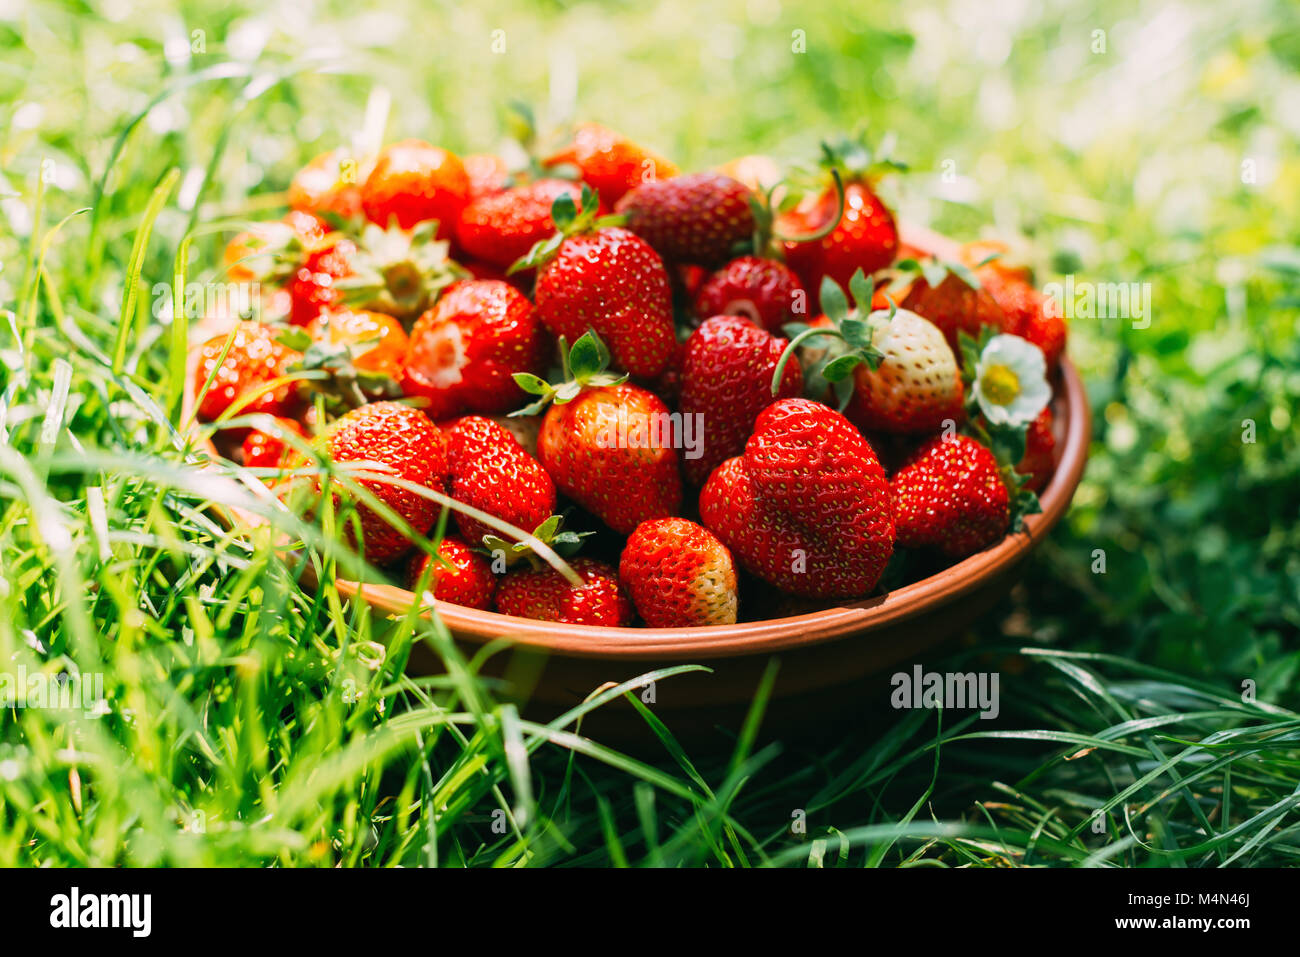 Placa de fresa en primer plano Foto de stock